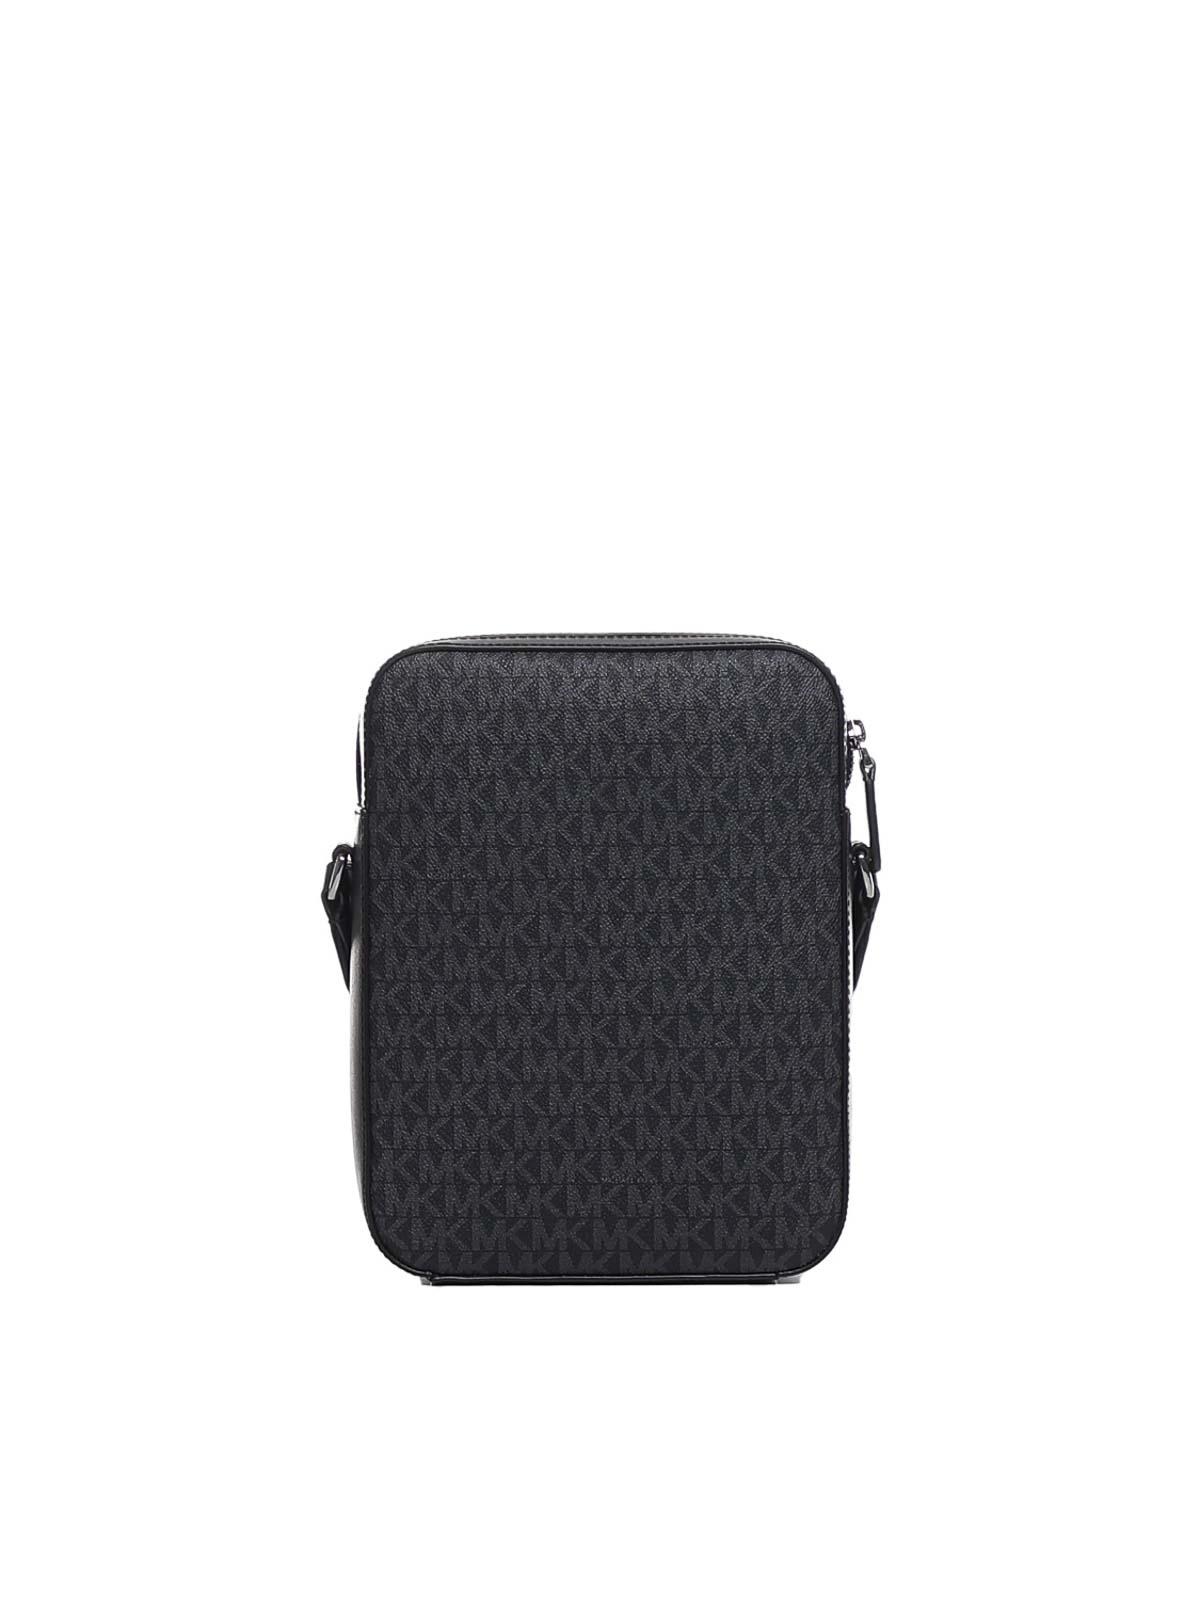 MICHAEL Michael Kors Varick Logo Detailed Zipped Messenger Bag in